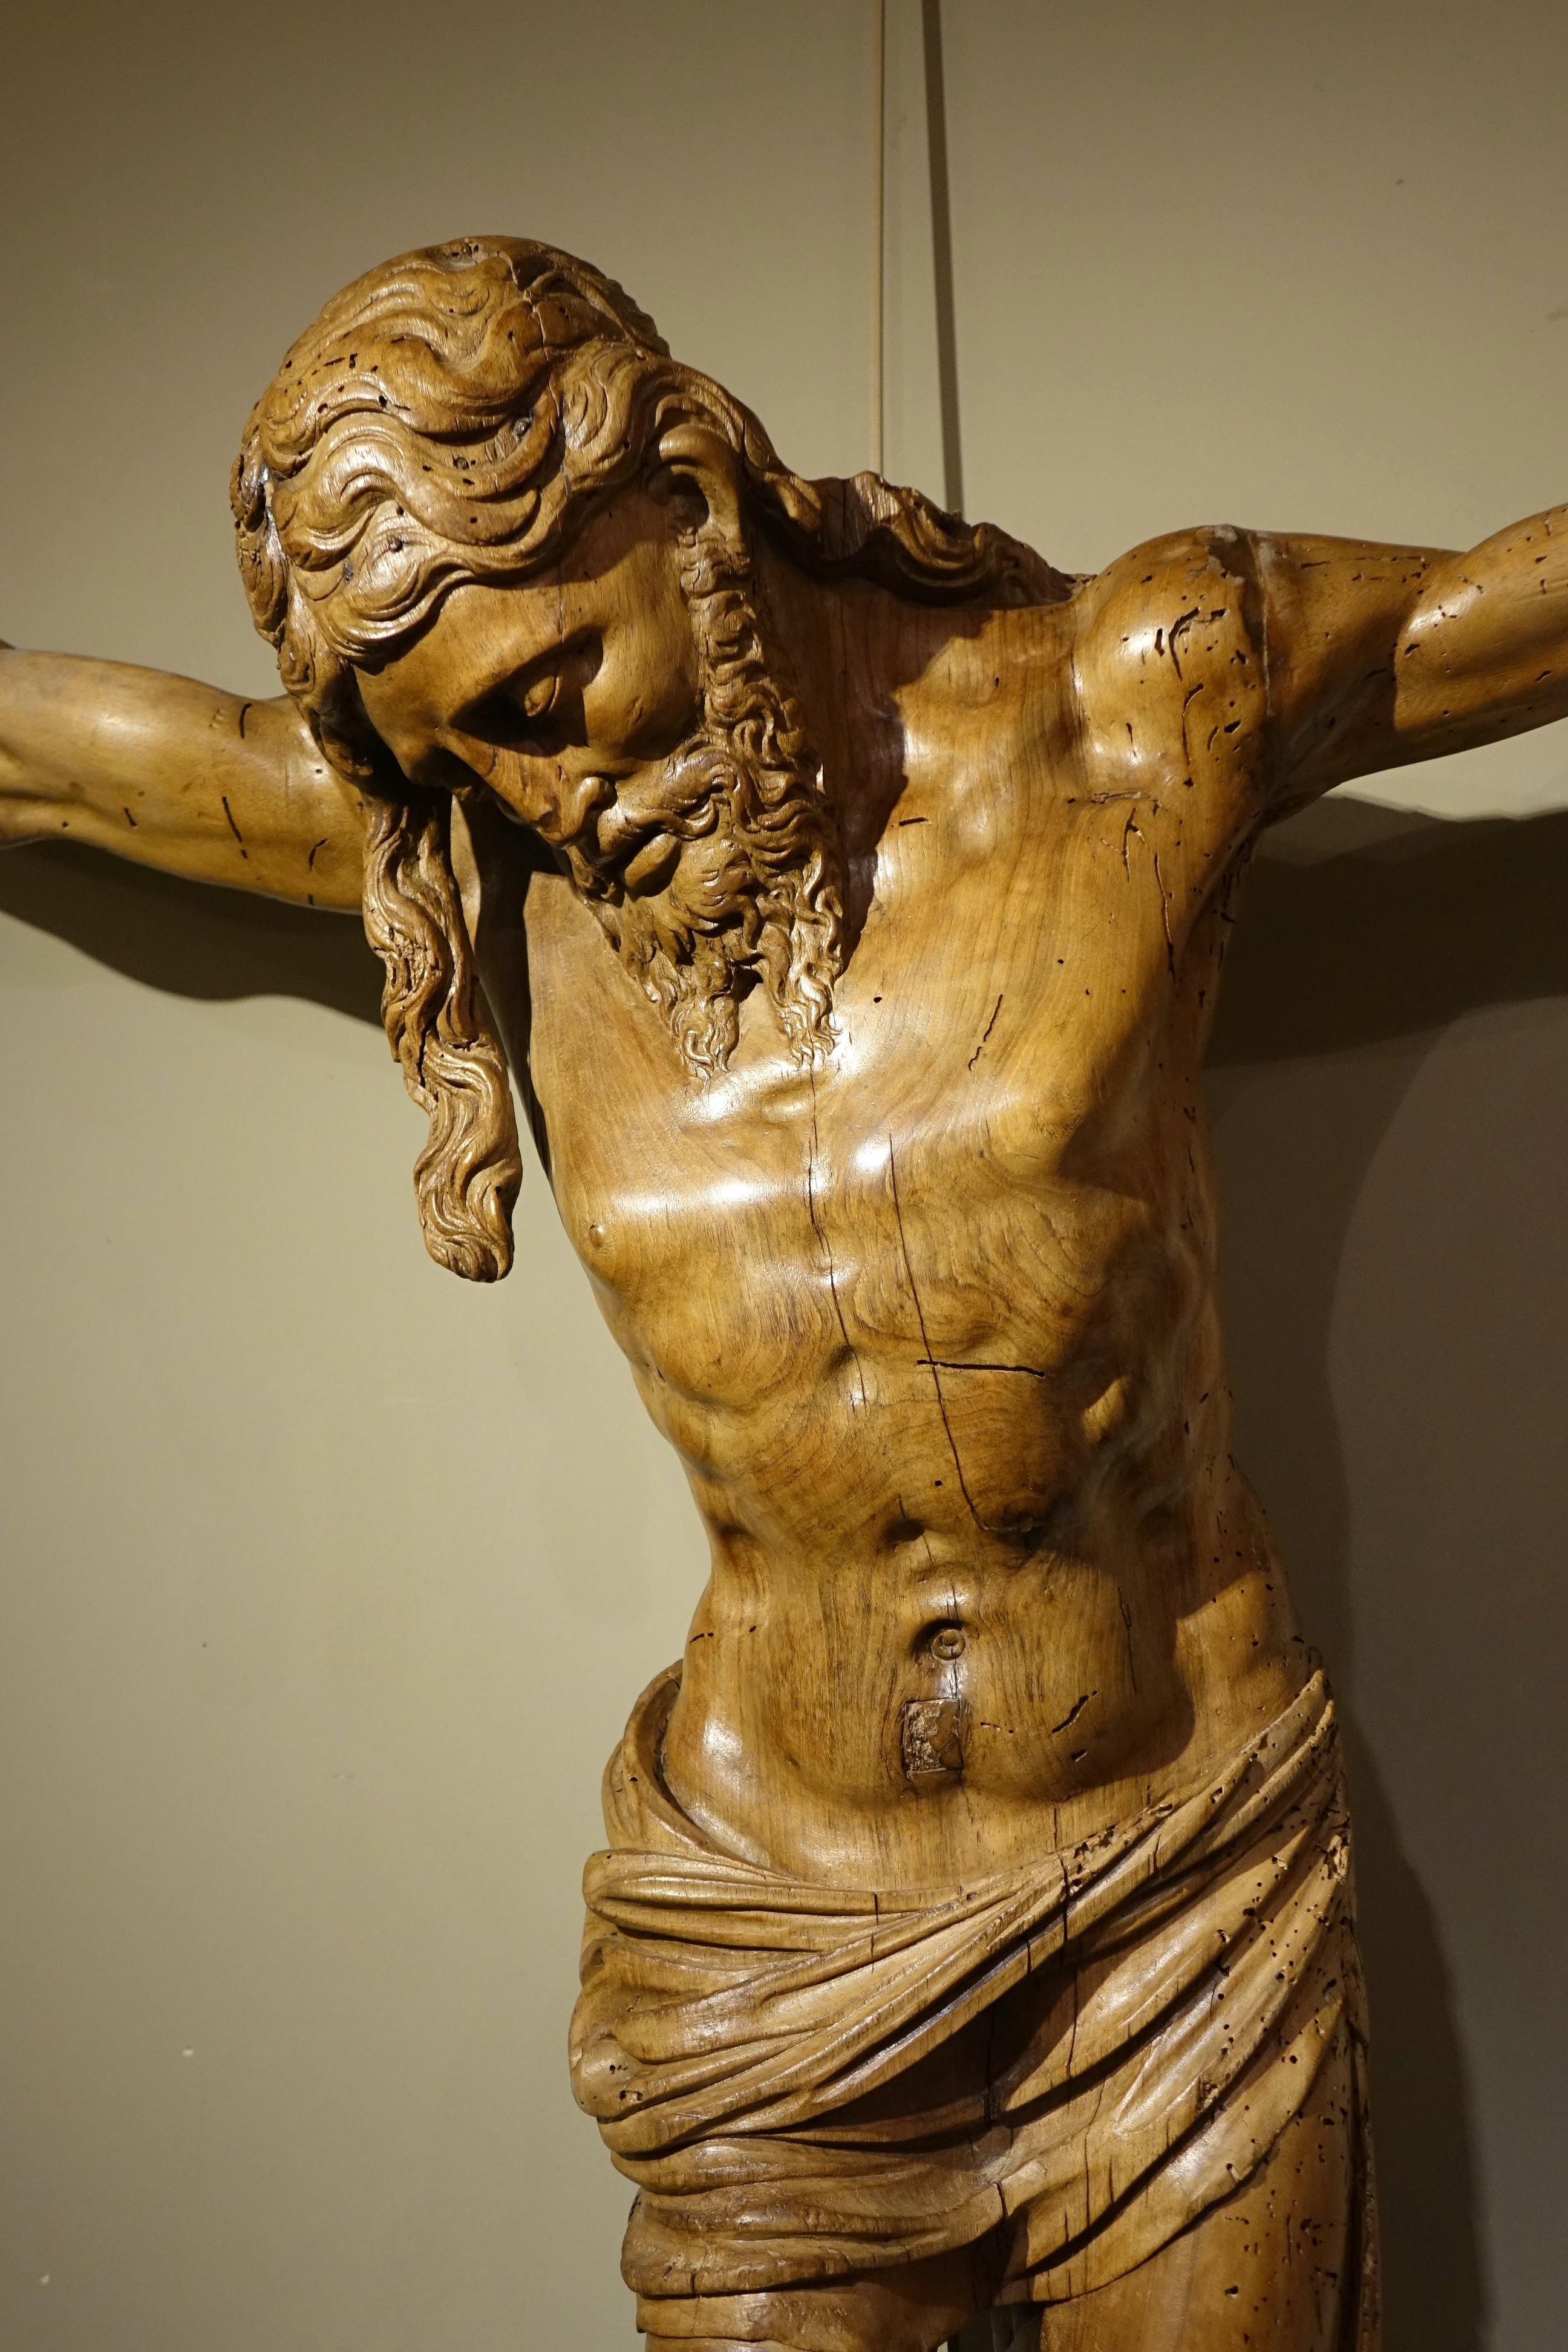 Großer Christus am Kreuz, geschnitzt in der Runde in Nussbaumholz.
Mit großem Realismus hat der Bildhauer die Holzmaserung auf der Büste und die Form der Beine hervorgehoben.
Der rechte Teil des Haares fällt herab und wird von den Schultern